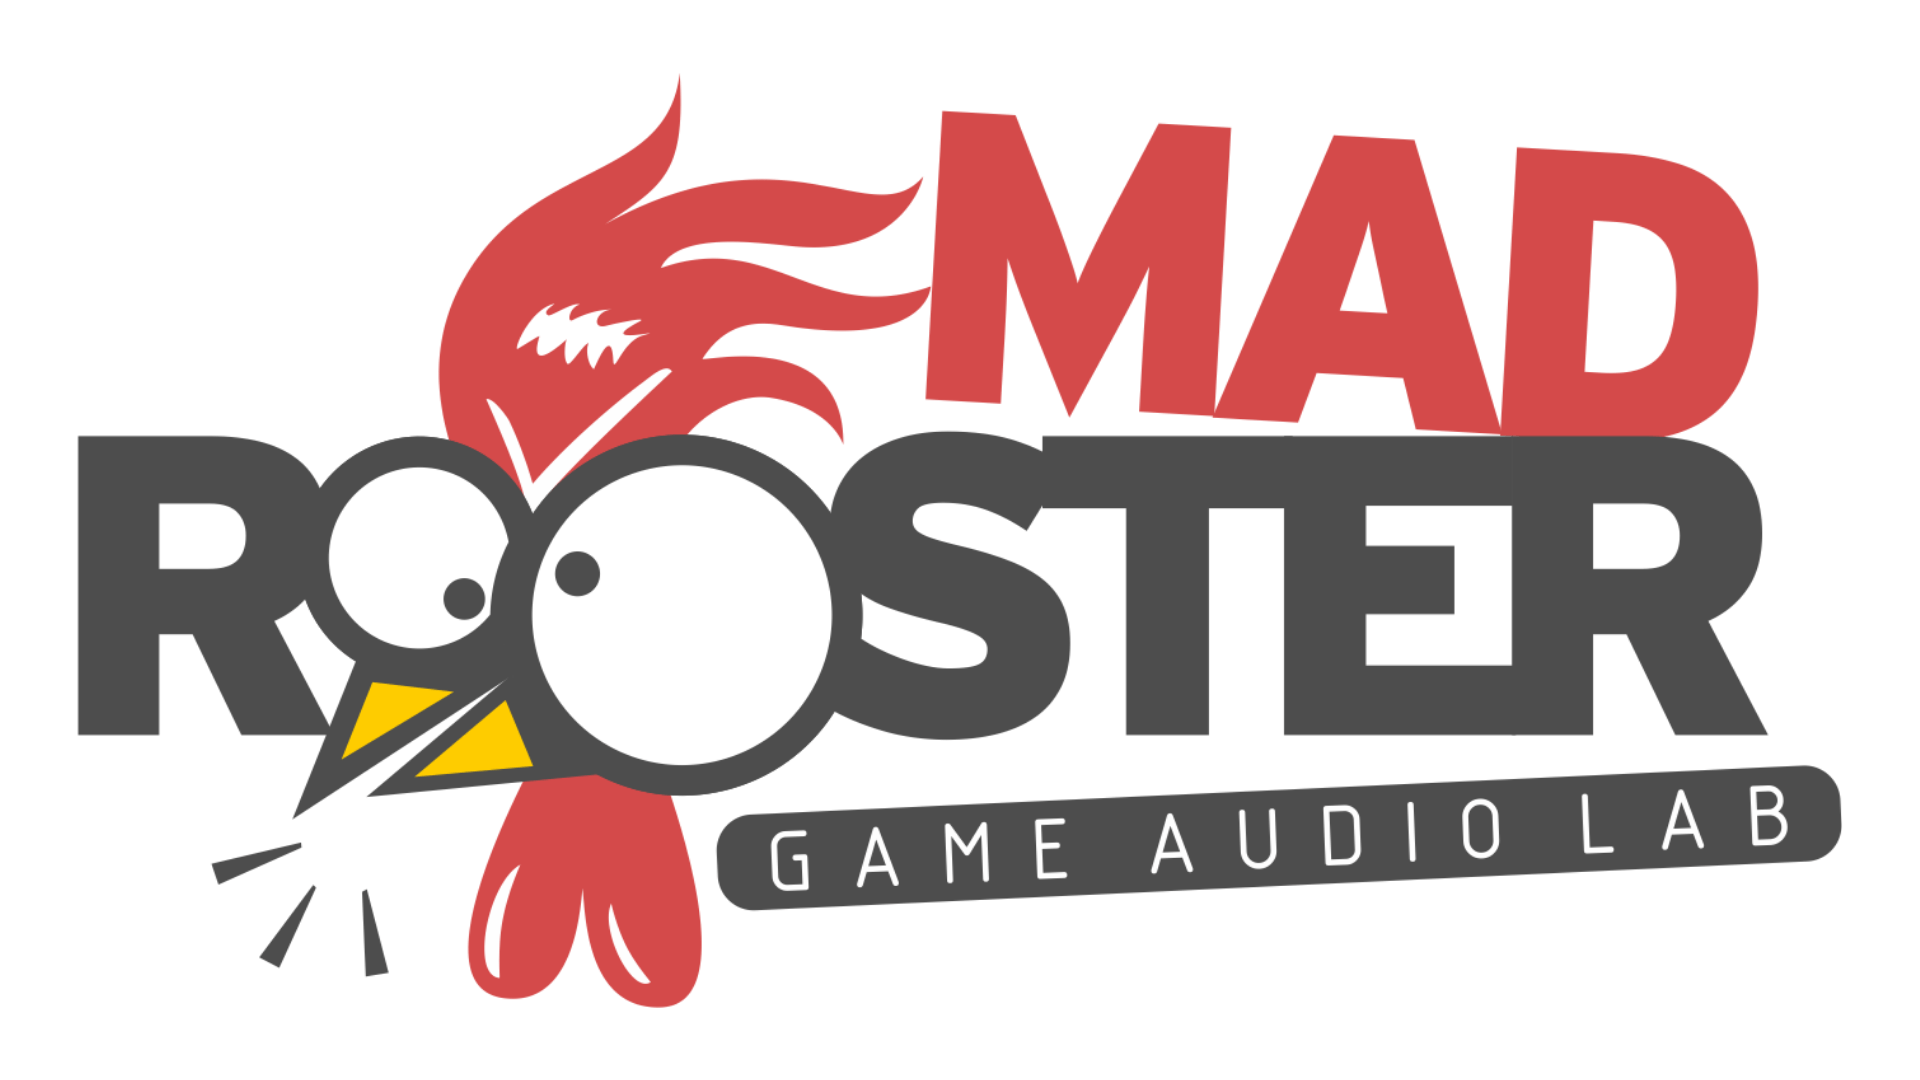 Oyunlar için özel ses ve müzik prodüksiyonu yapan yerli girişim: MadRooster Game Audio Lab